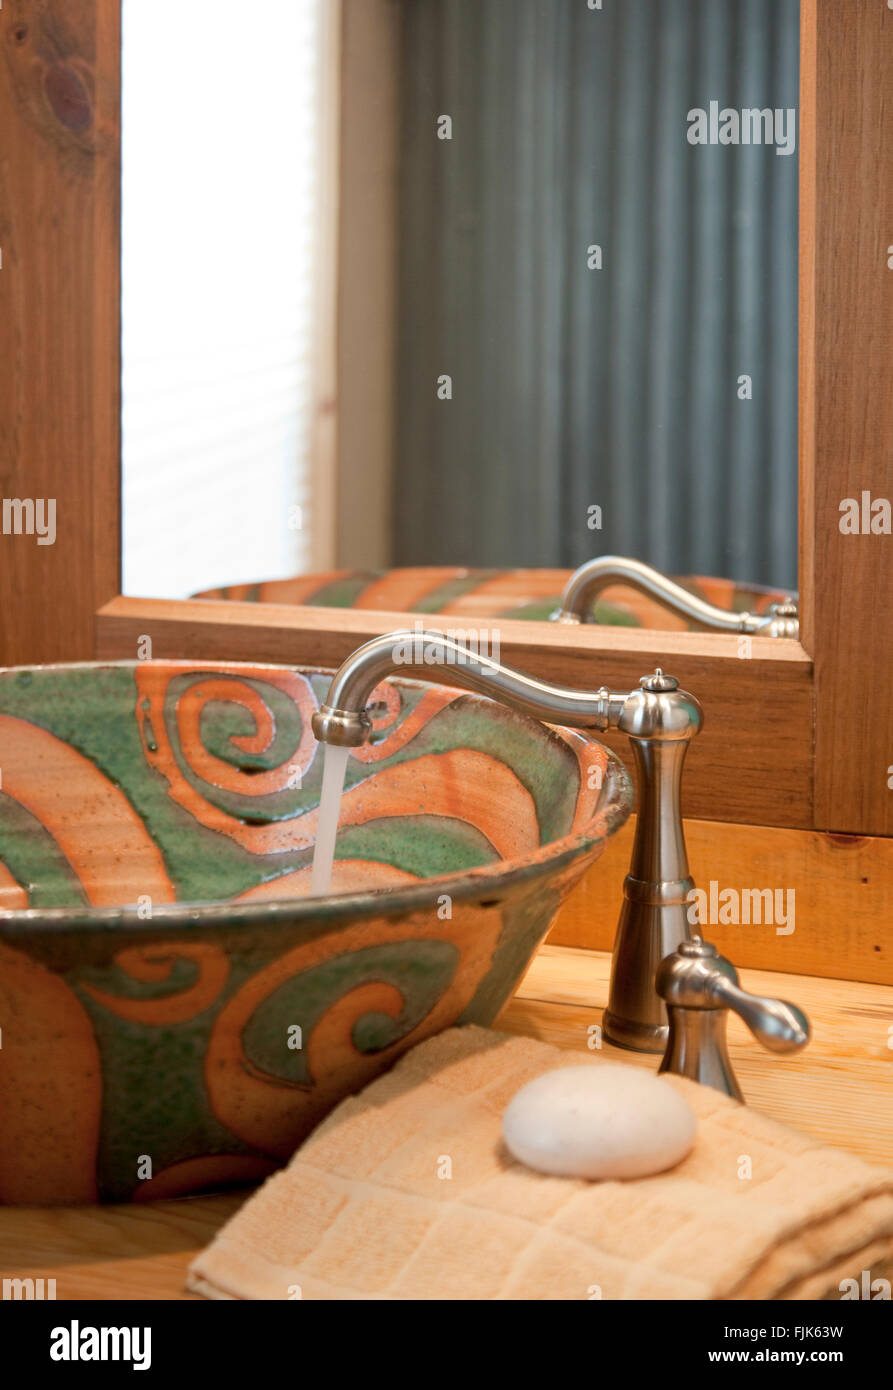 Läuft Wasser aus einem Edelstahl Wasserhahn in eine handgefertigte Keramik Waschbecken, Handtuch und Spiegel in einem kreativen home Bad Toilette Waschtisch Stockfoto